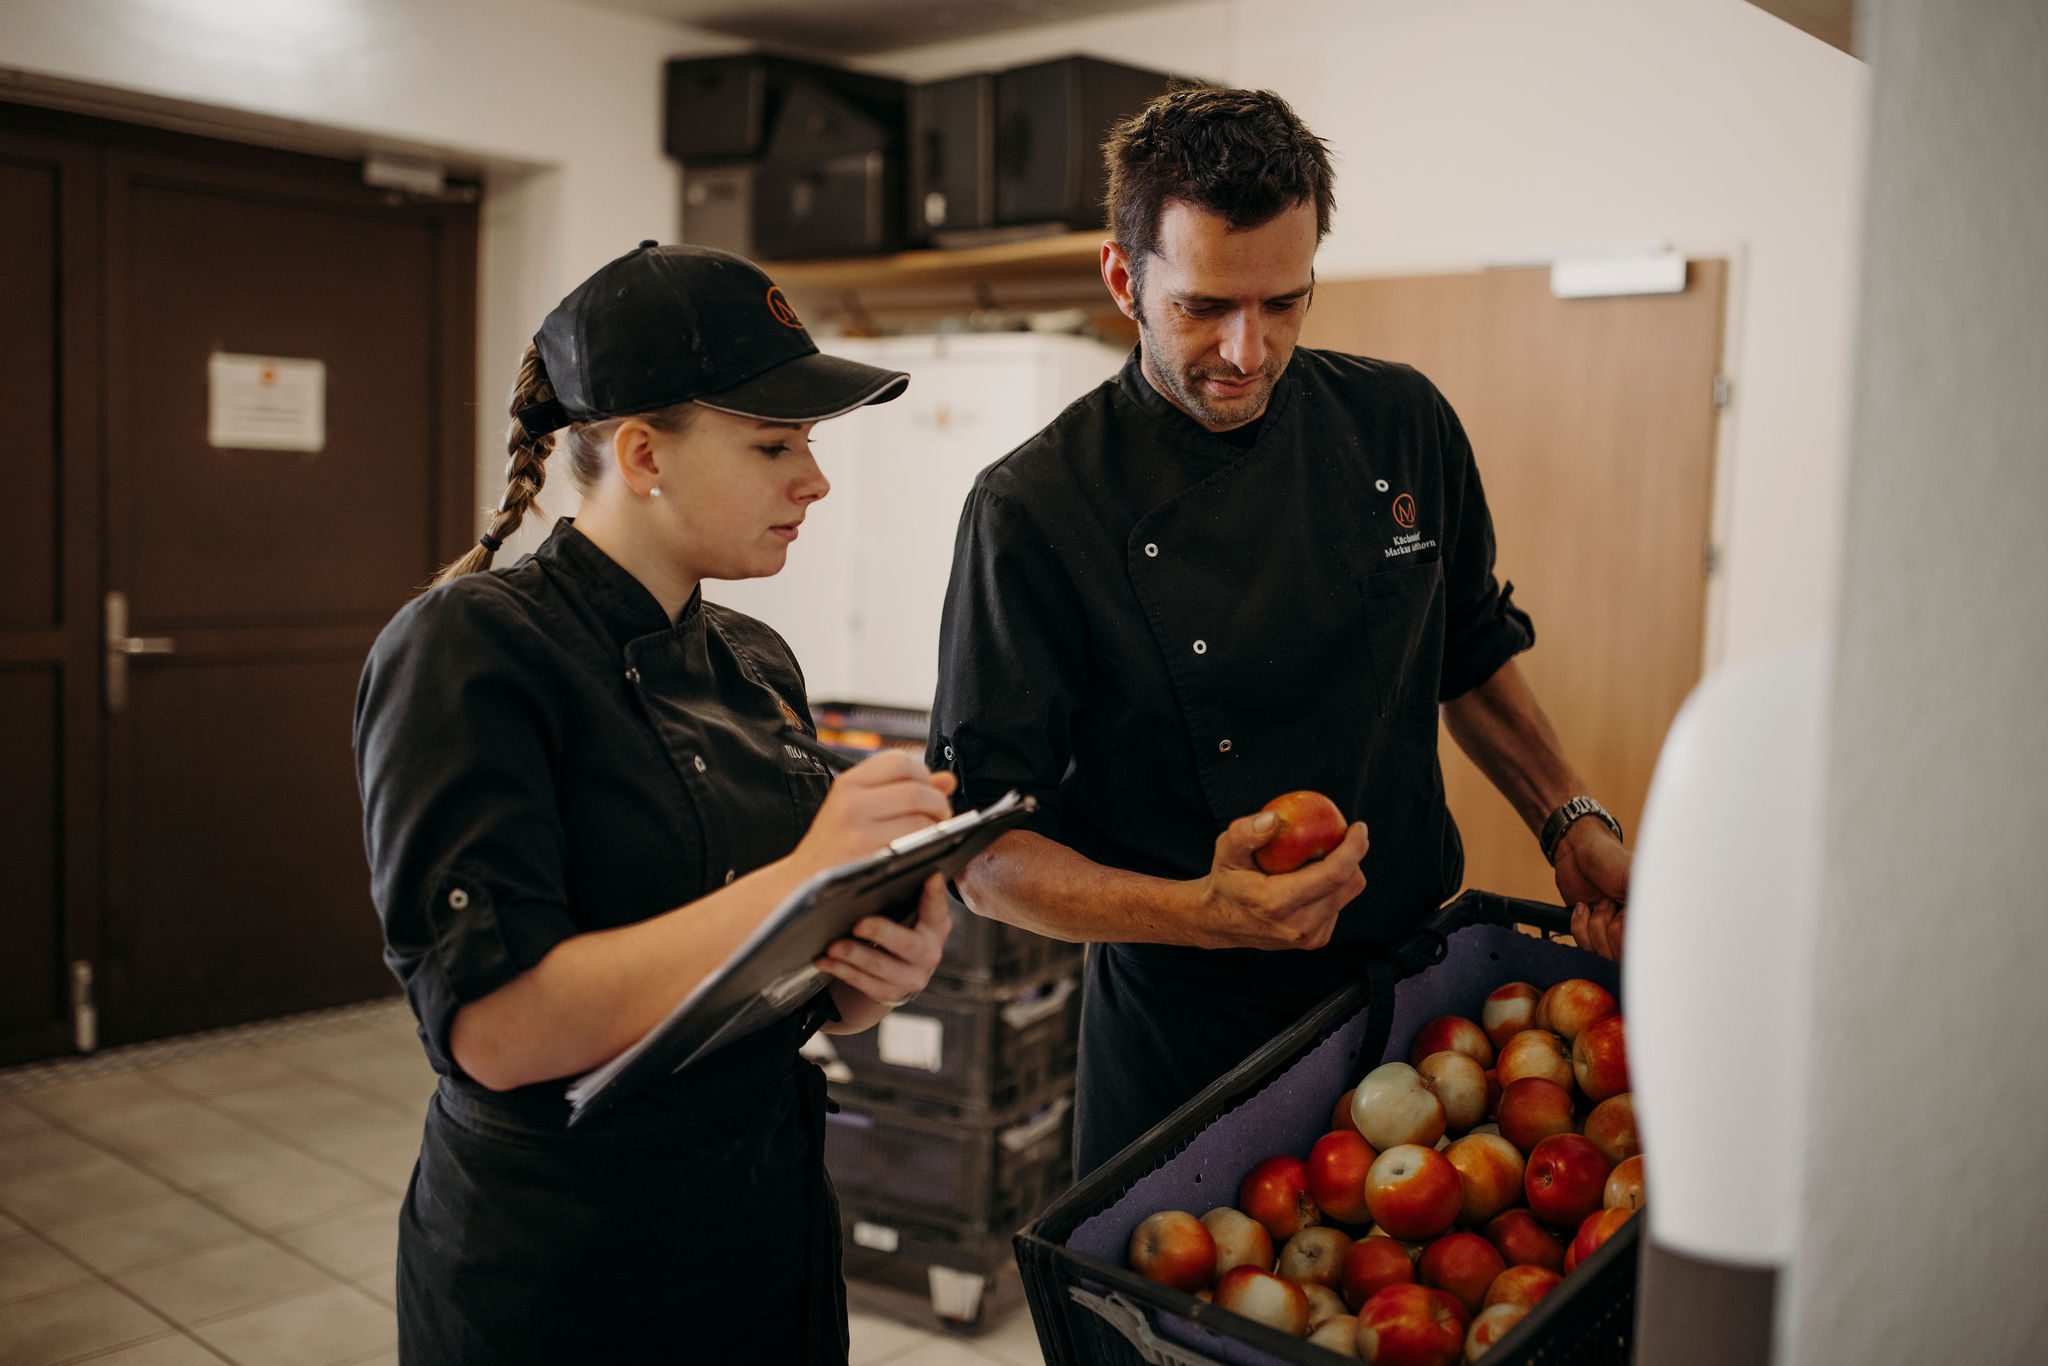 Kochlehrling und Ausbilder überprüfen die Menge und Qualität der angelieferten Äpfel